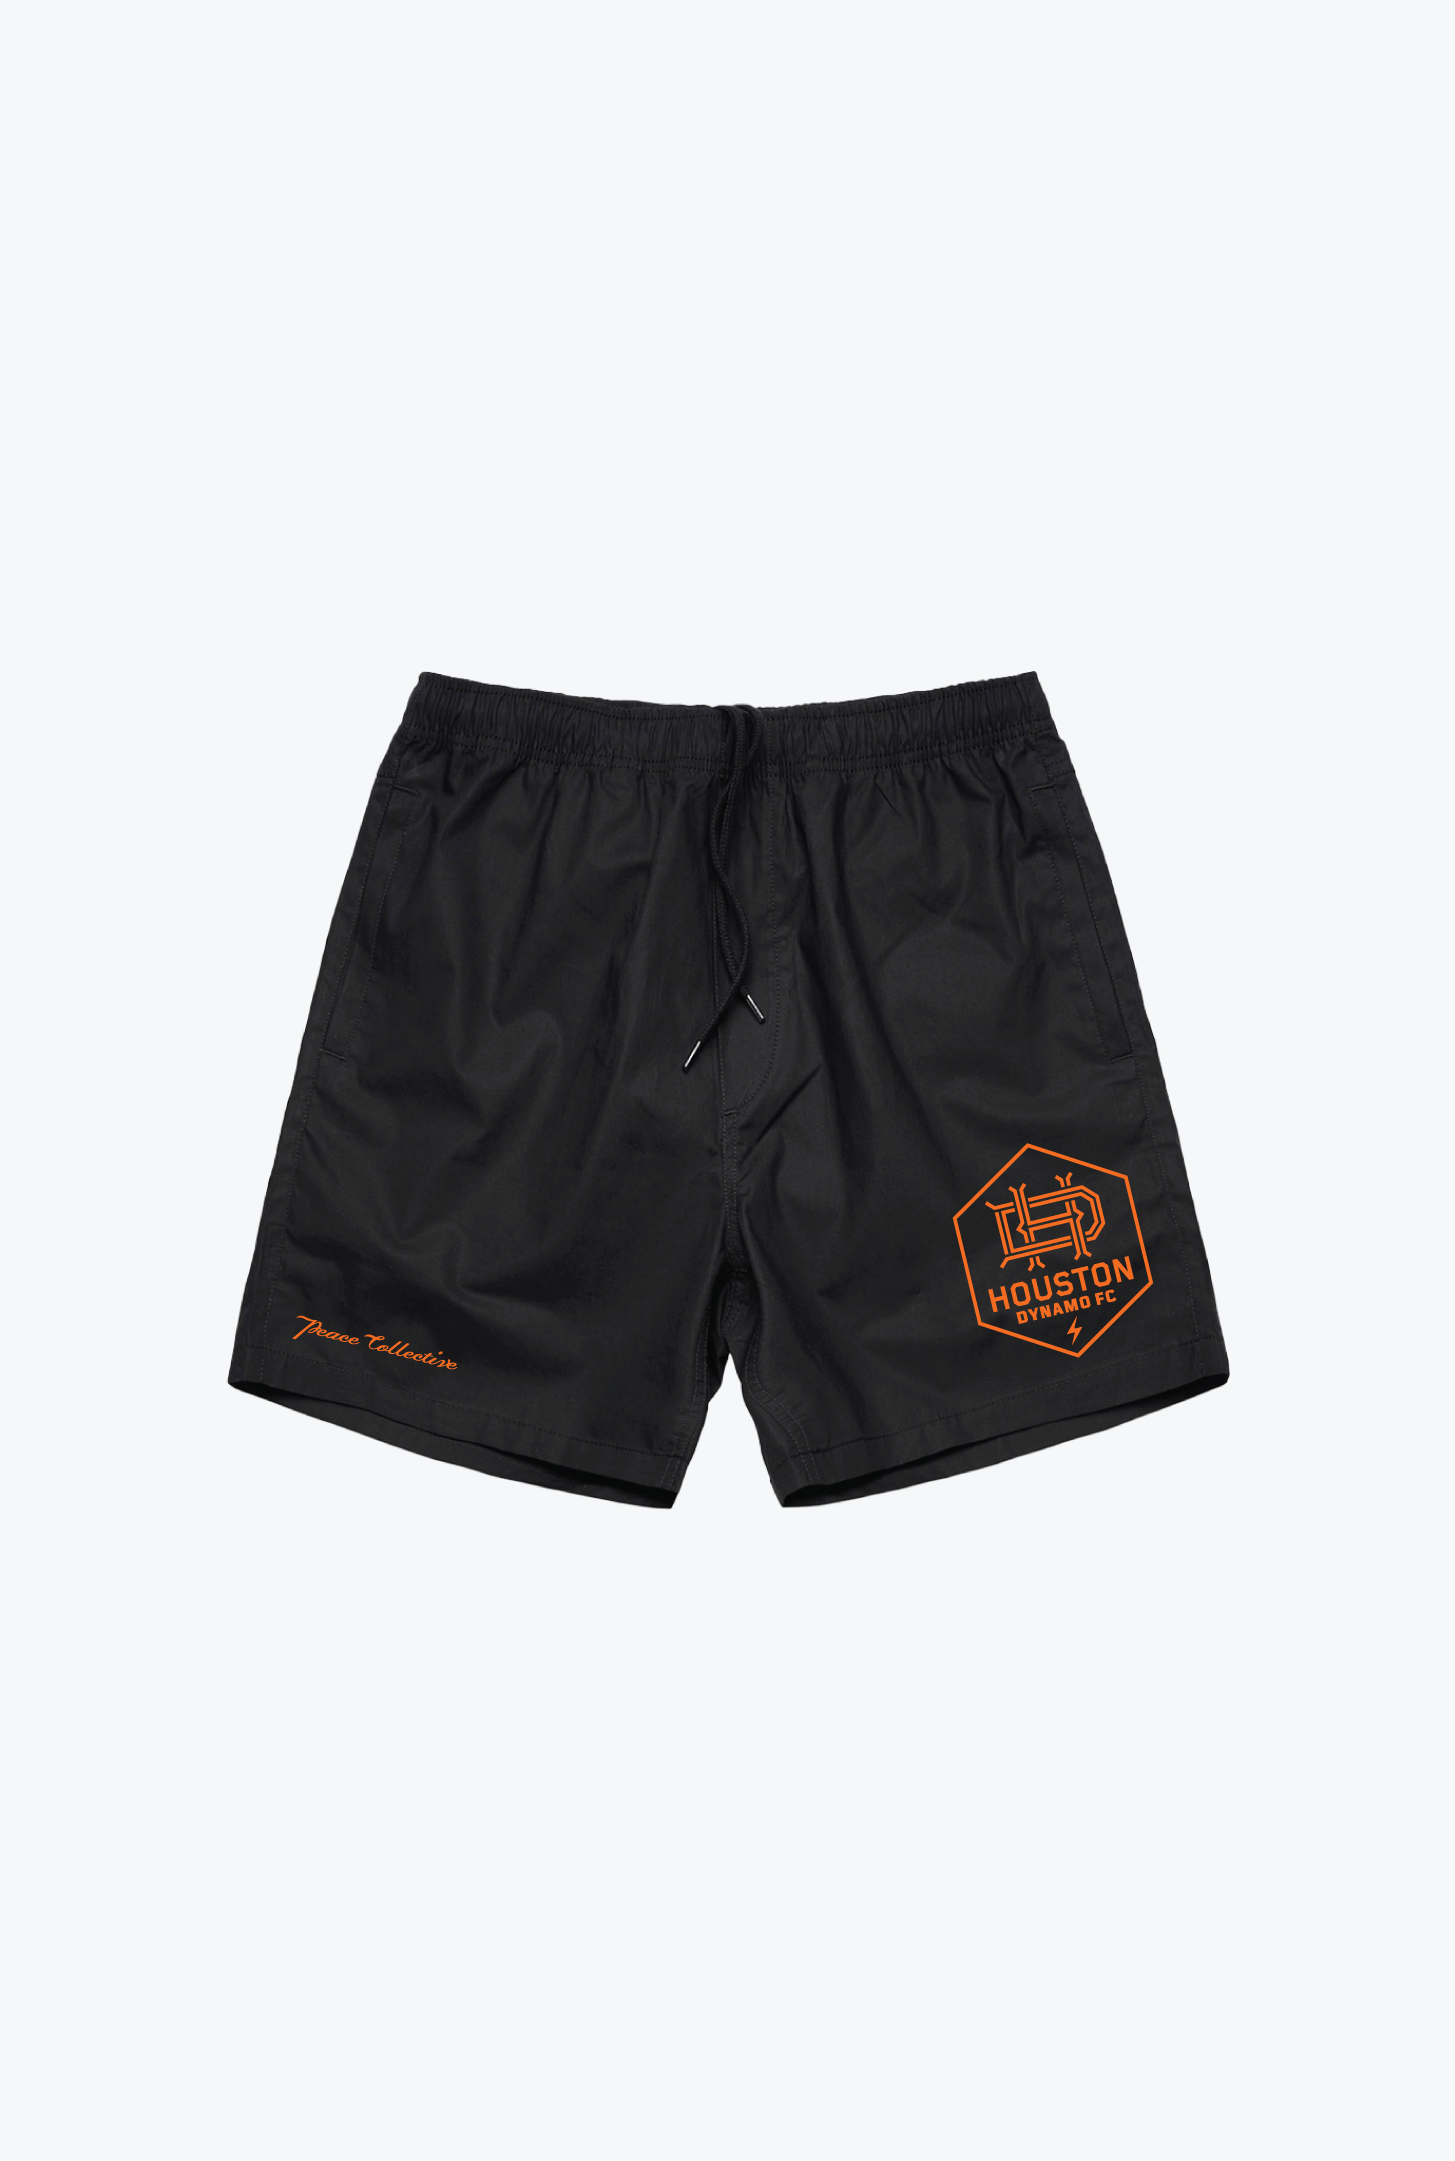 Houston Dynamo FC Essentials Board Shorts - Black